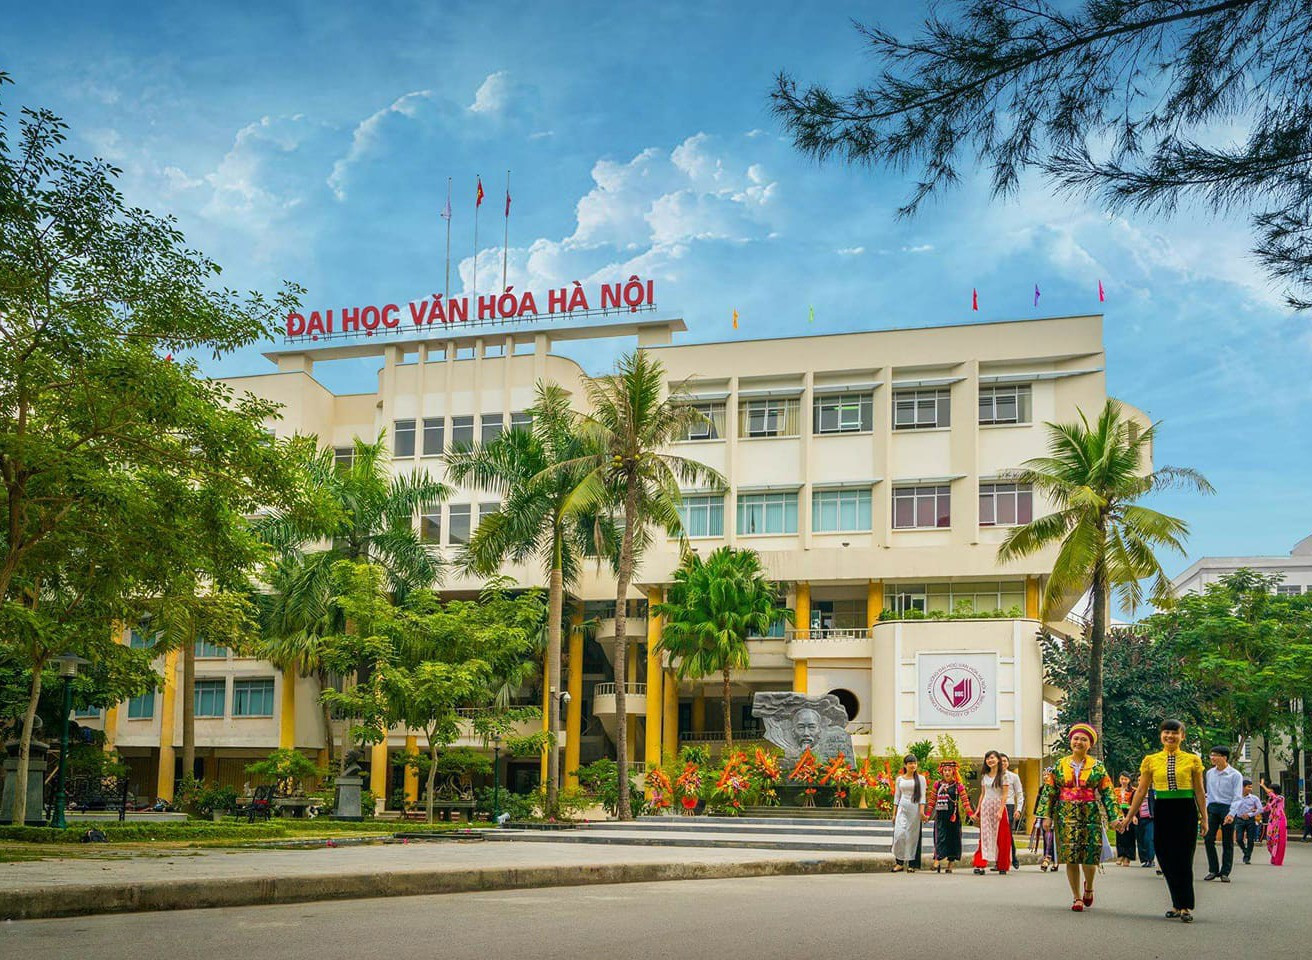 Trường Viết văn Nguyễn Du xưa, giờ thành Khoa Viết văn - Báo chí, thuộc Đại học Văn hóa Hà Nội. Ảnh: internet